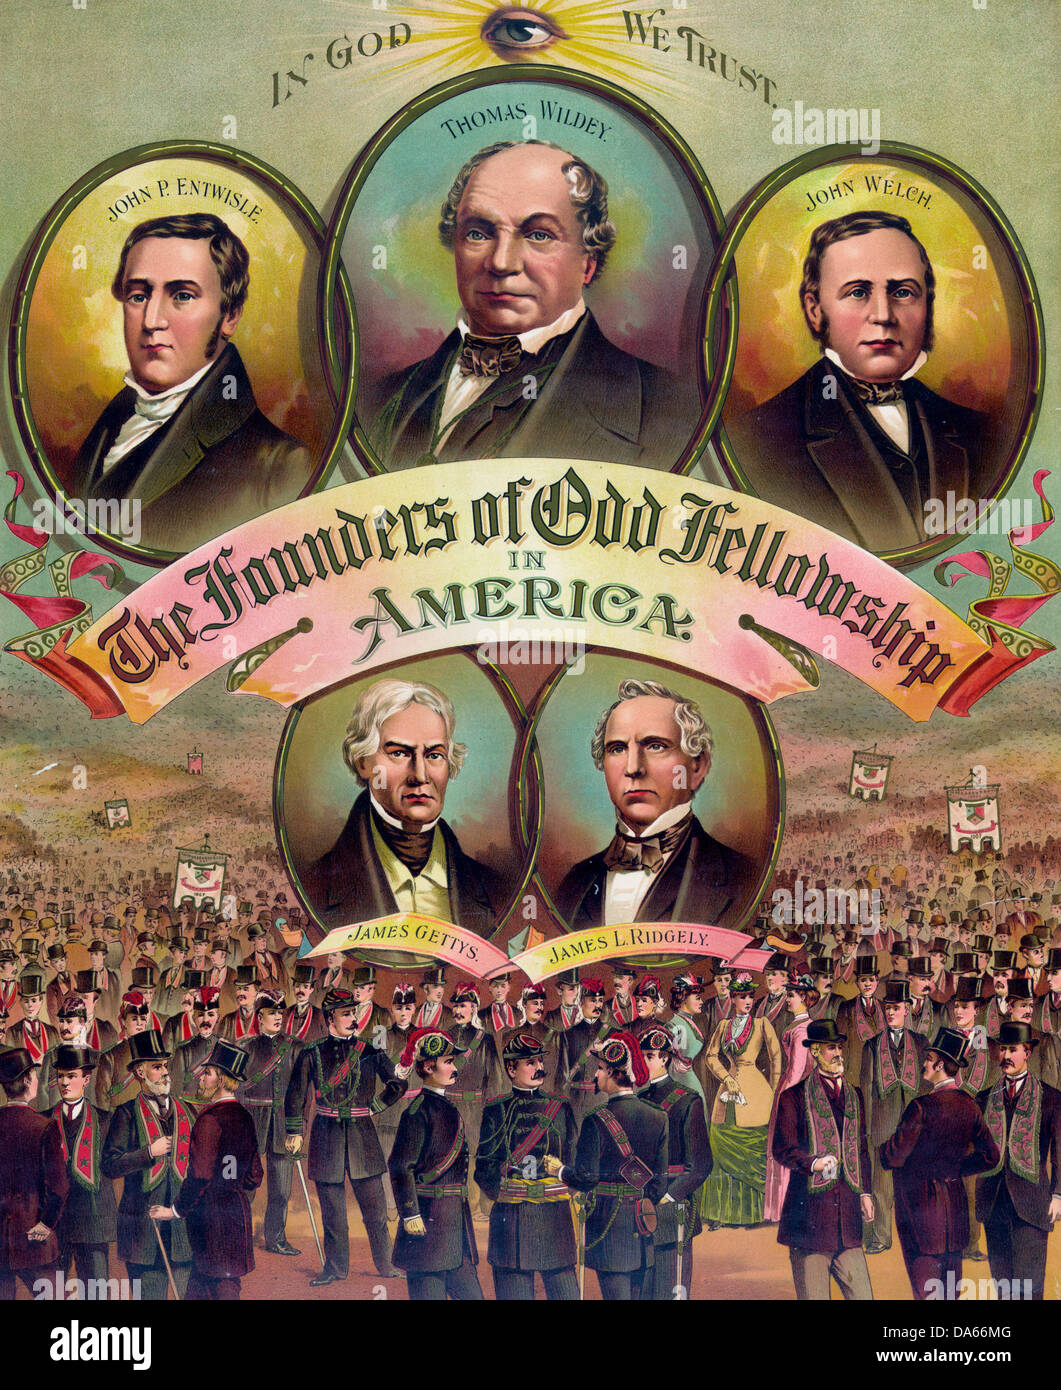 Les fondateurs de l'Amérique en bourse impair, vers 1891 - Poster Banque D'Images